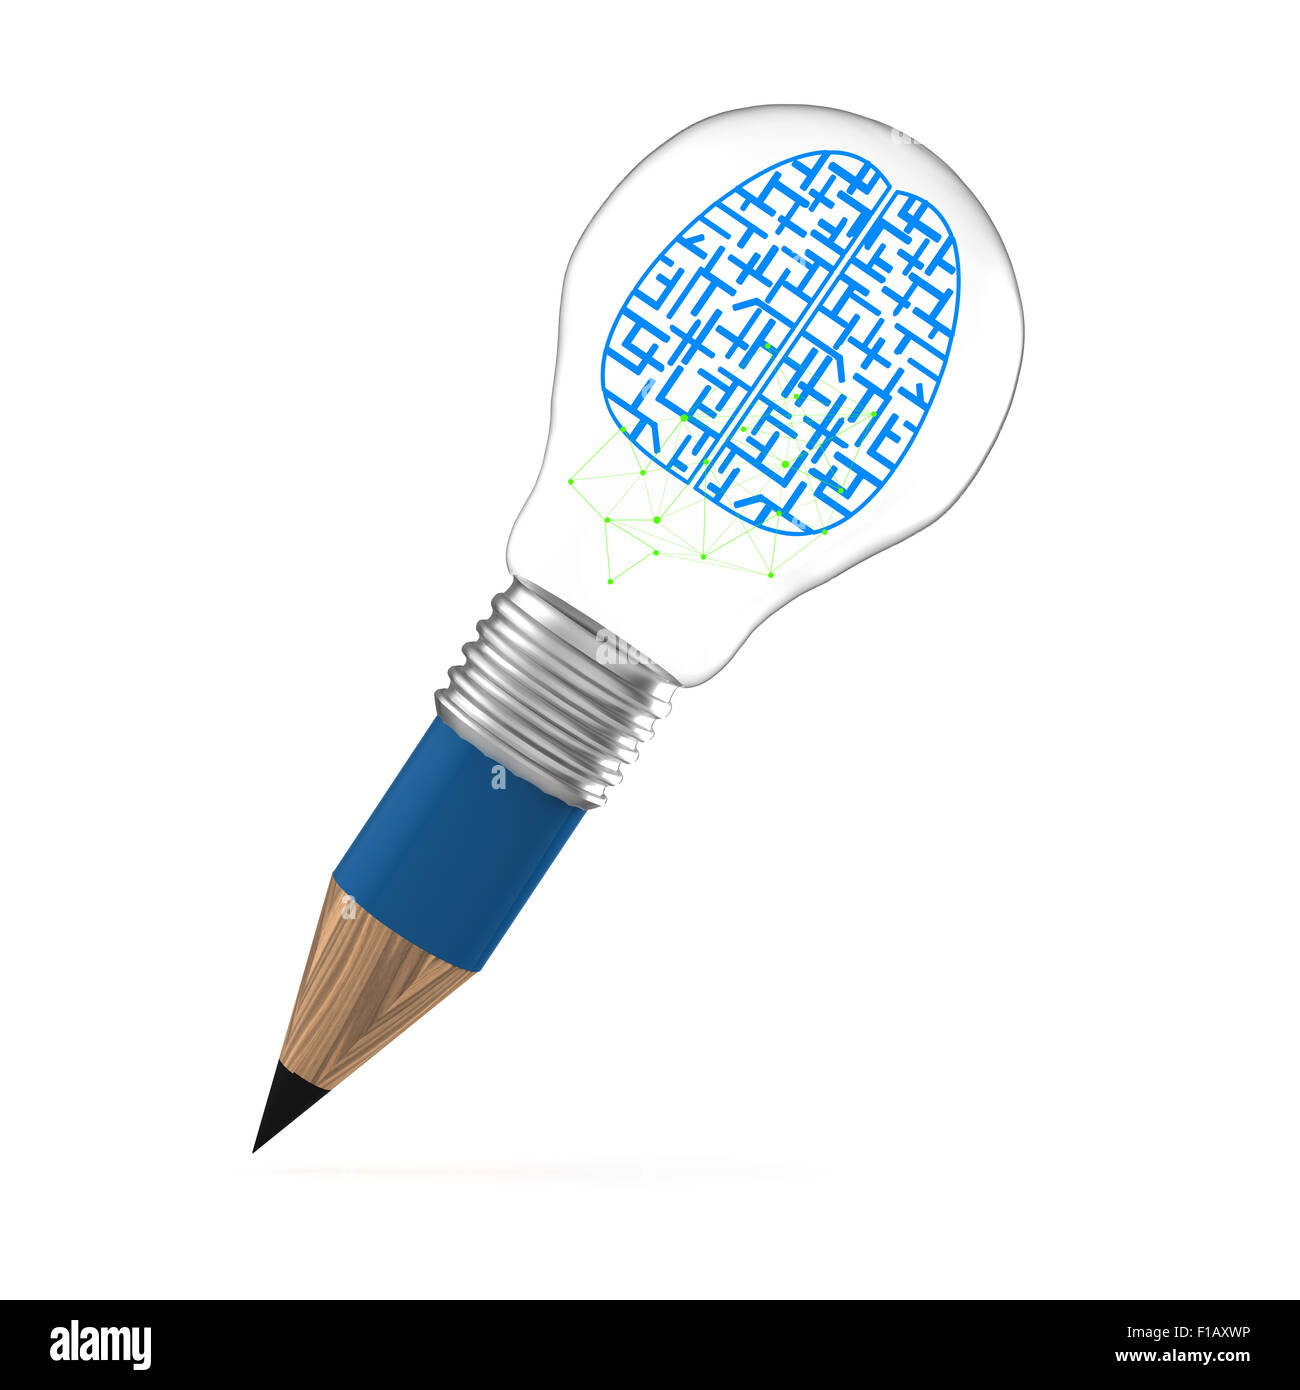 L'idée du cerveau créatif que ampoule crayon concept créatif Banque D'Images